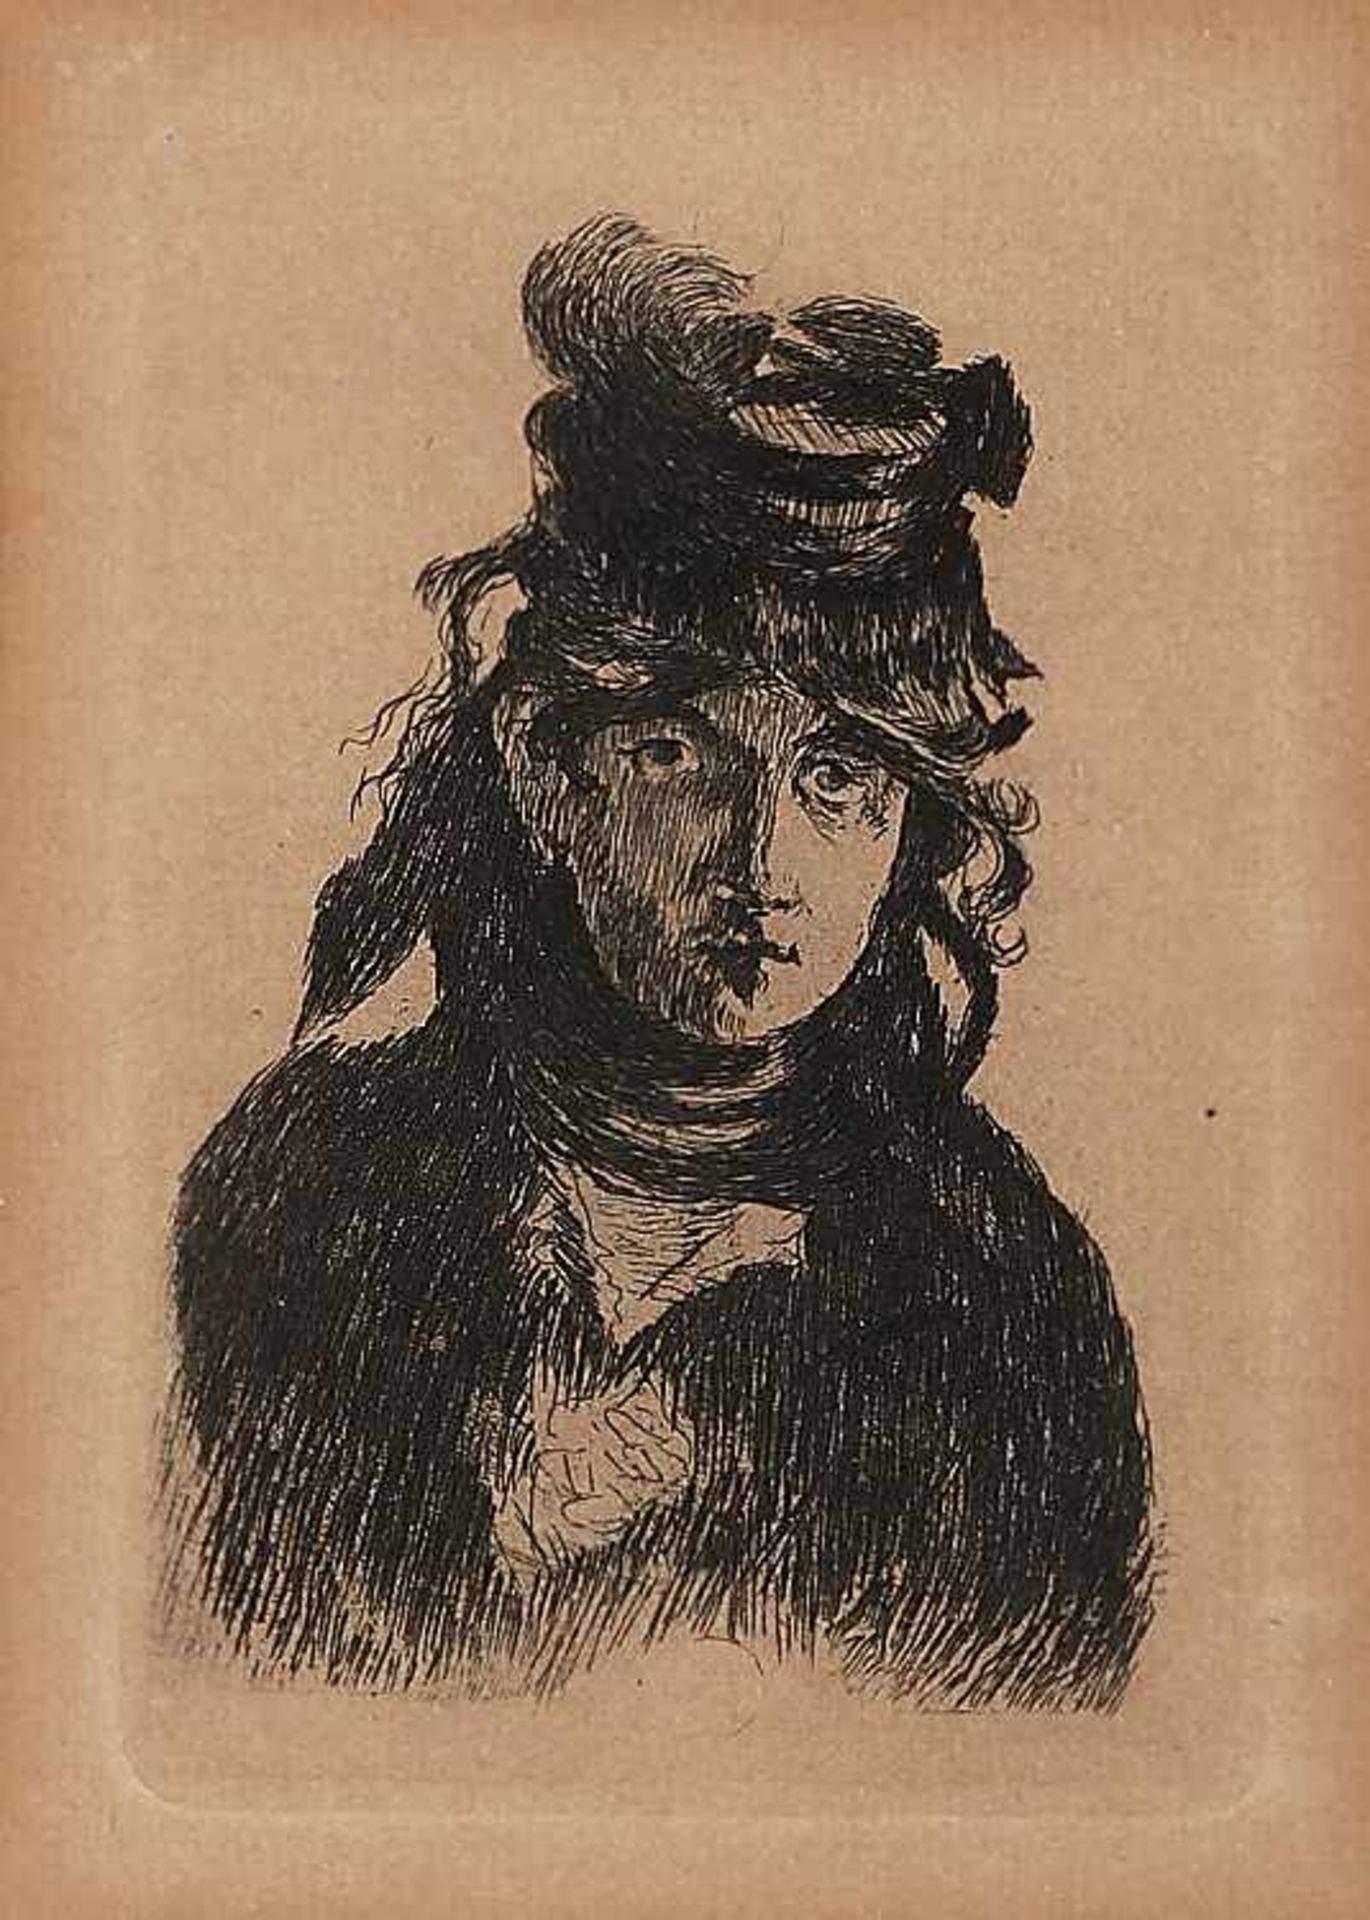 Künstler19./Anfang 20. Jh..Bildnis Berthe Morisot.1841 Bourges - 1895 Paris; franz. Malerin des